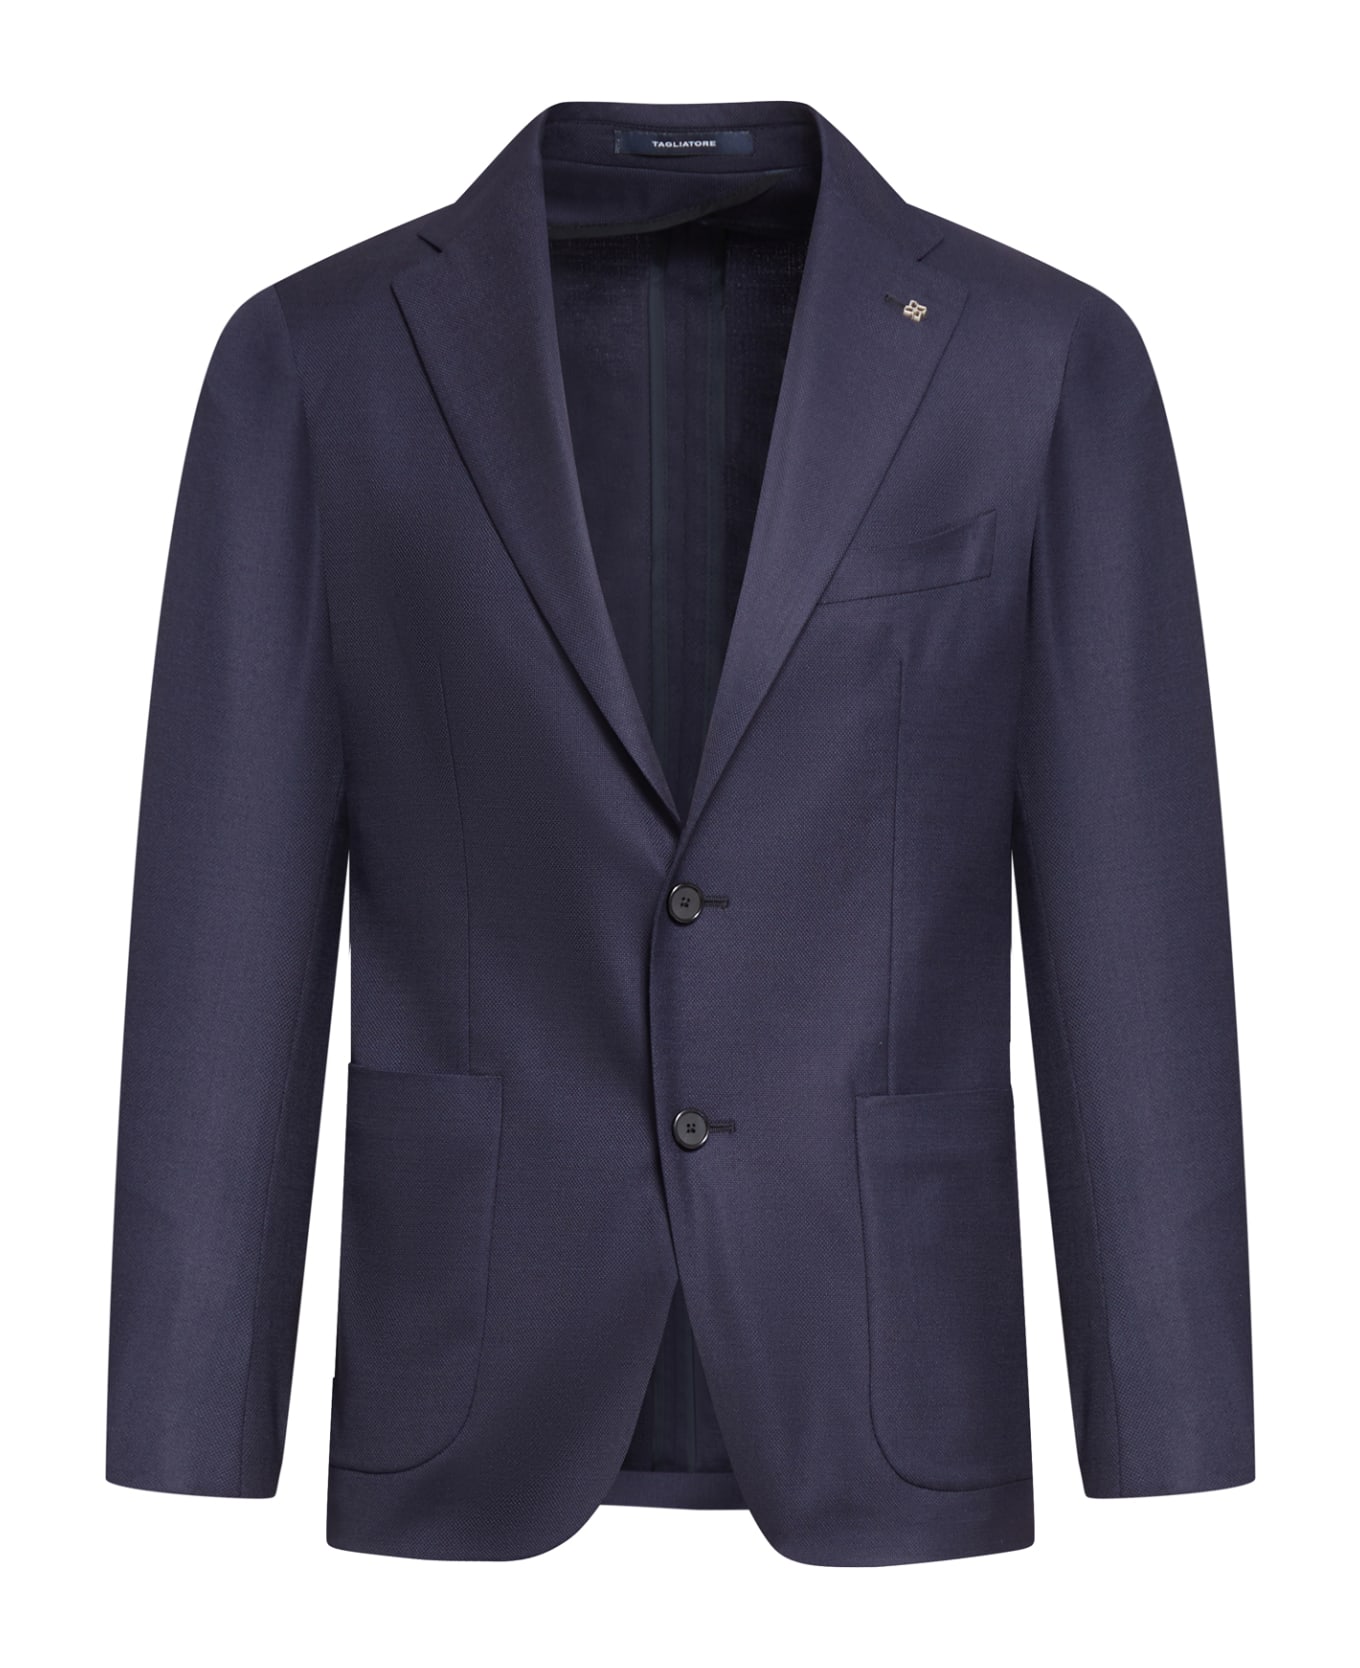 Tagliatore Jacket 1 Petto Blu In Opsak In Stok Service - Blue